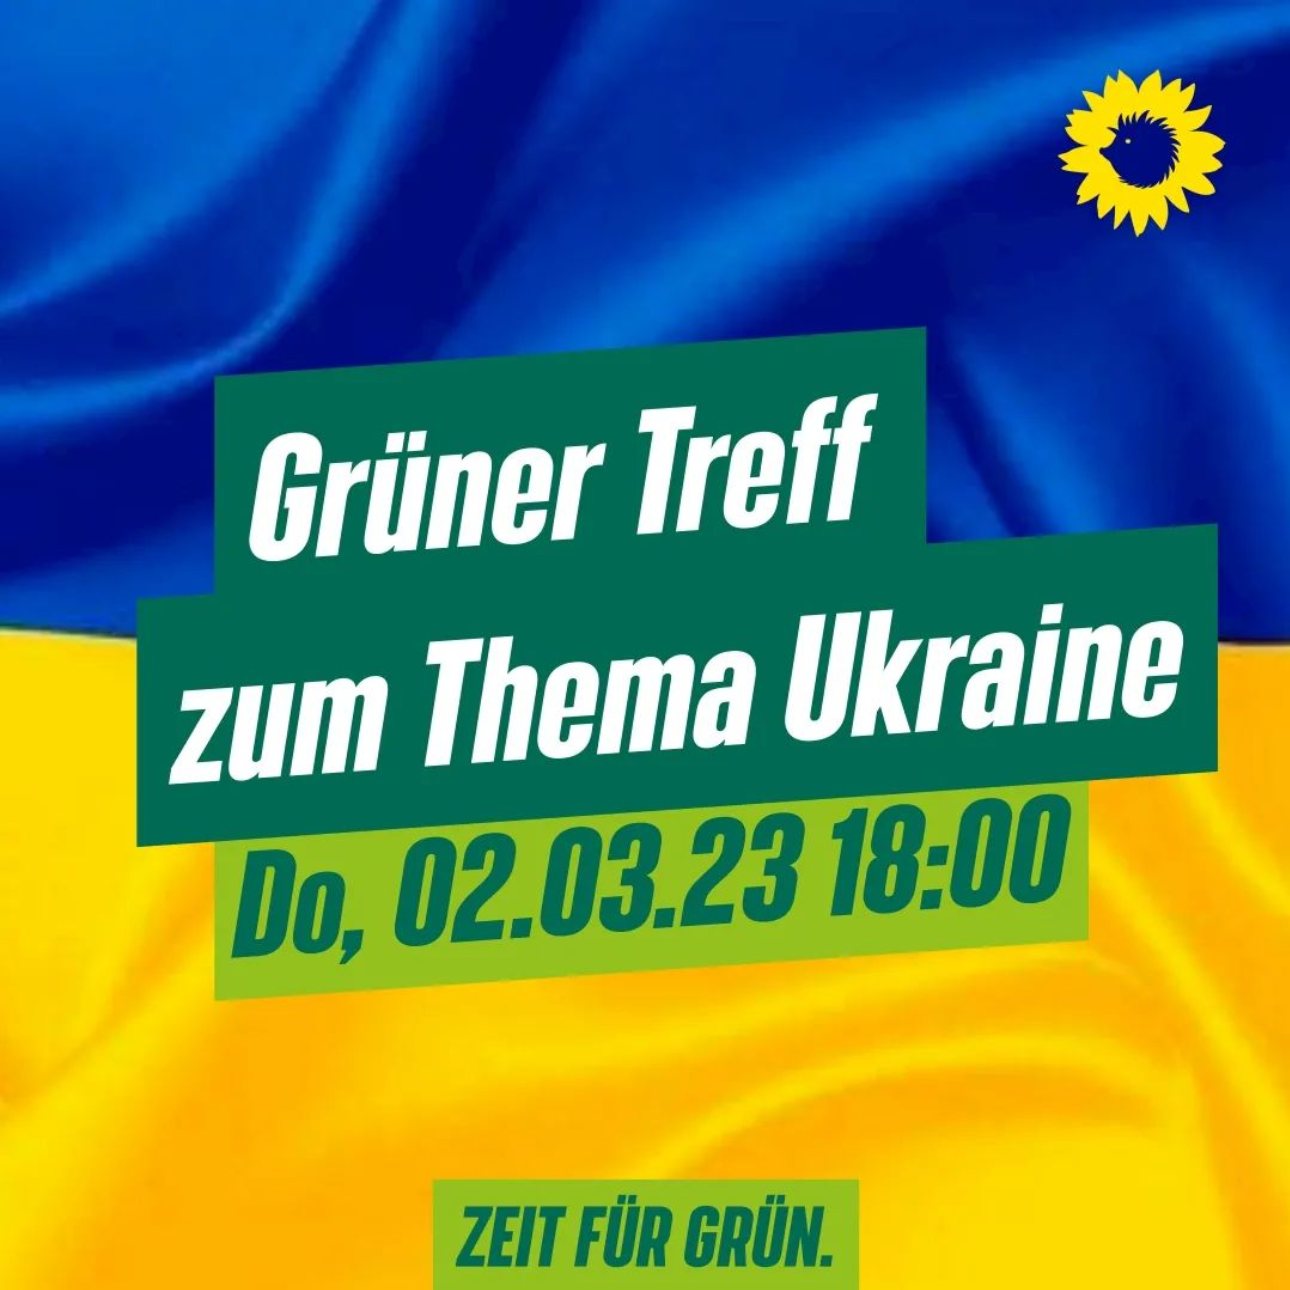 Symbolbild für die Veranstaltung "Grüner Treff zum Thema Ukraine" – Text vor ukrainischer Flagge